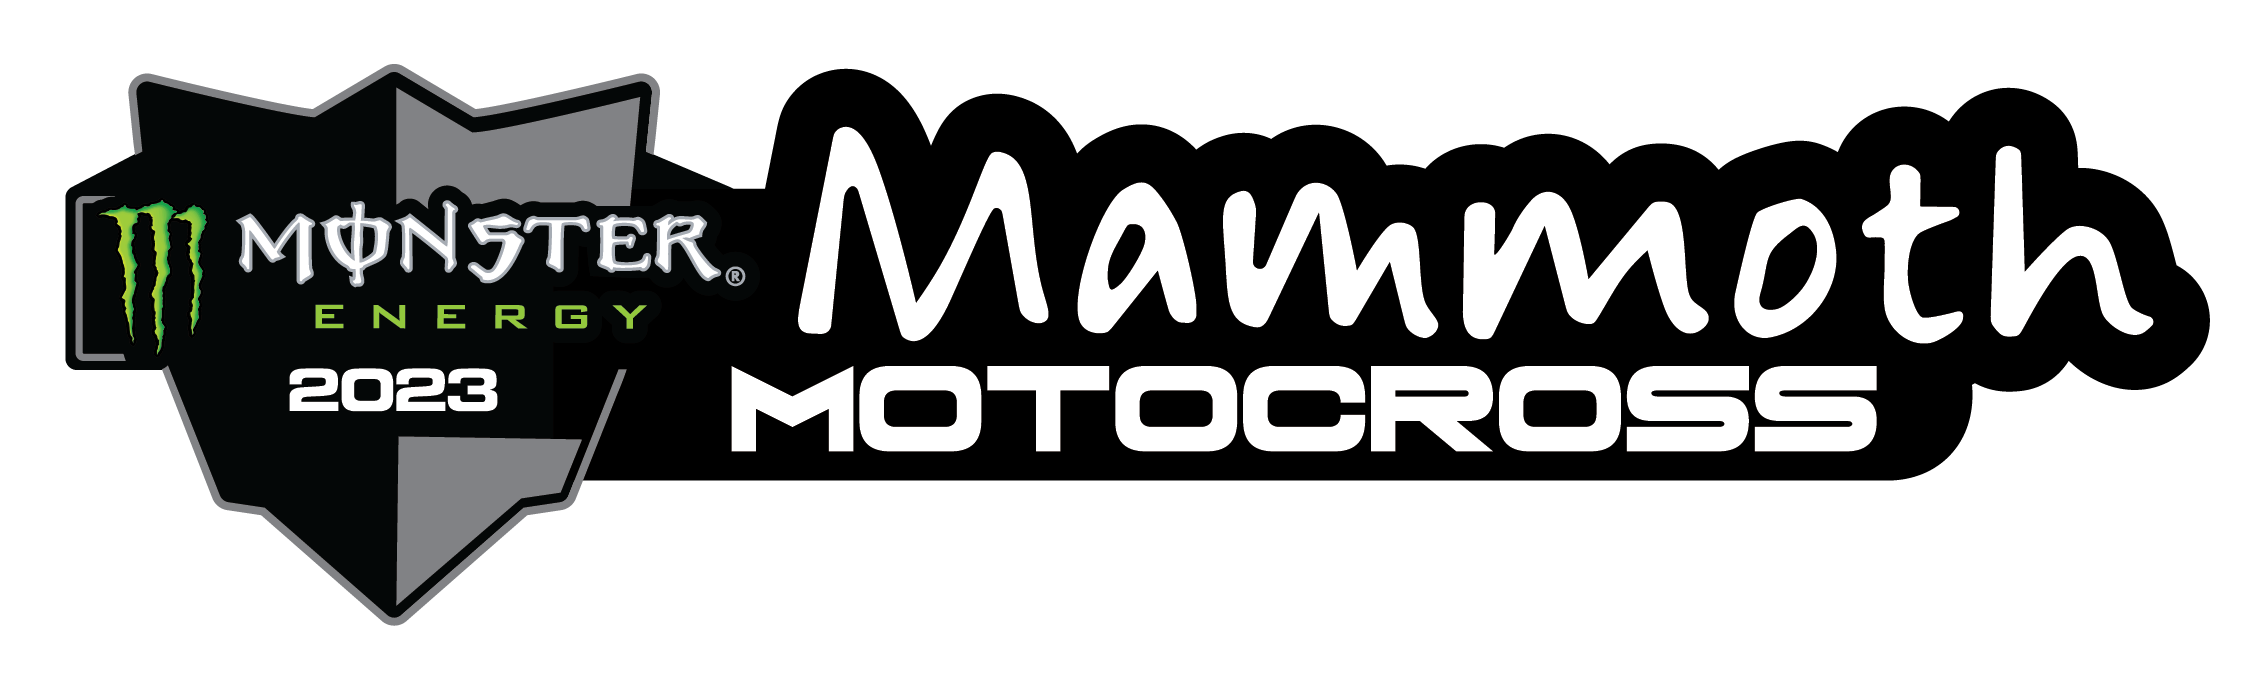 2023 Monster Energy Mammoth Motocross